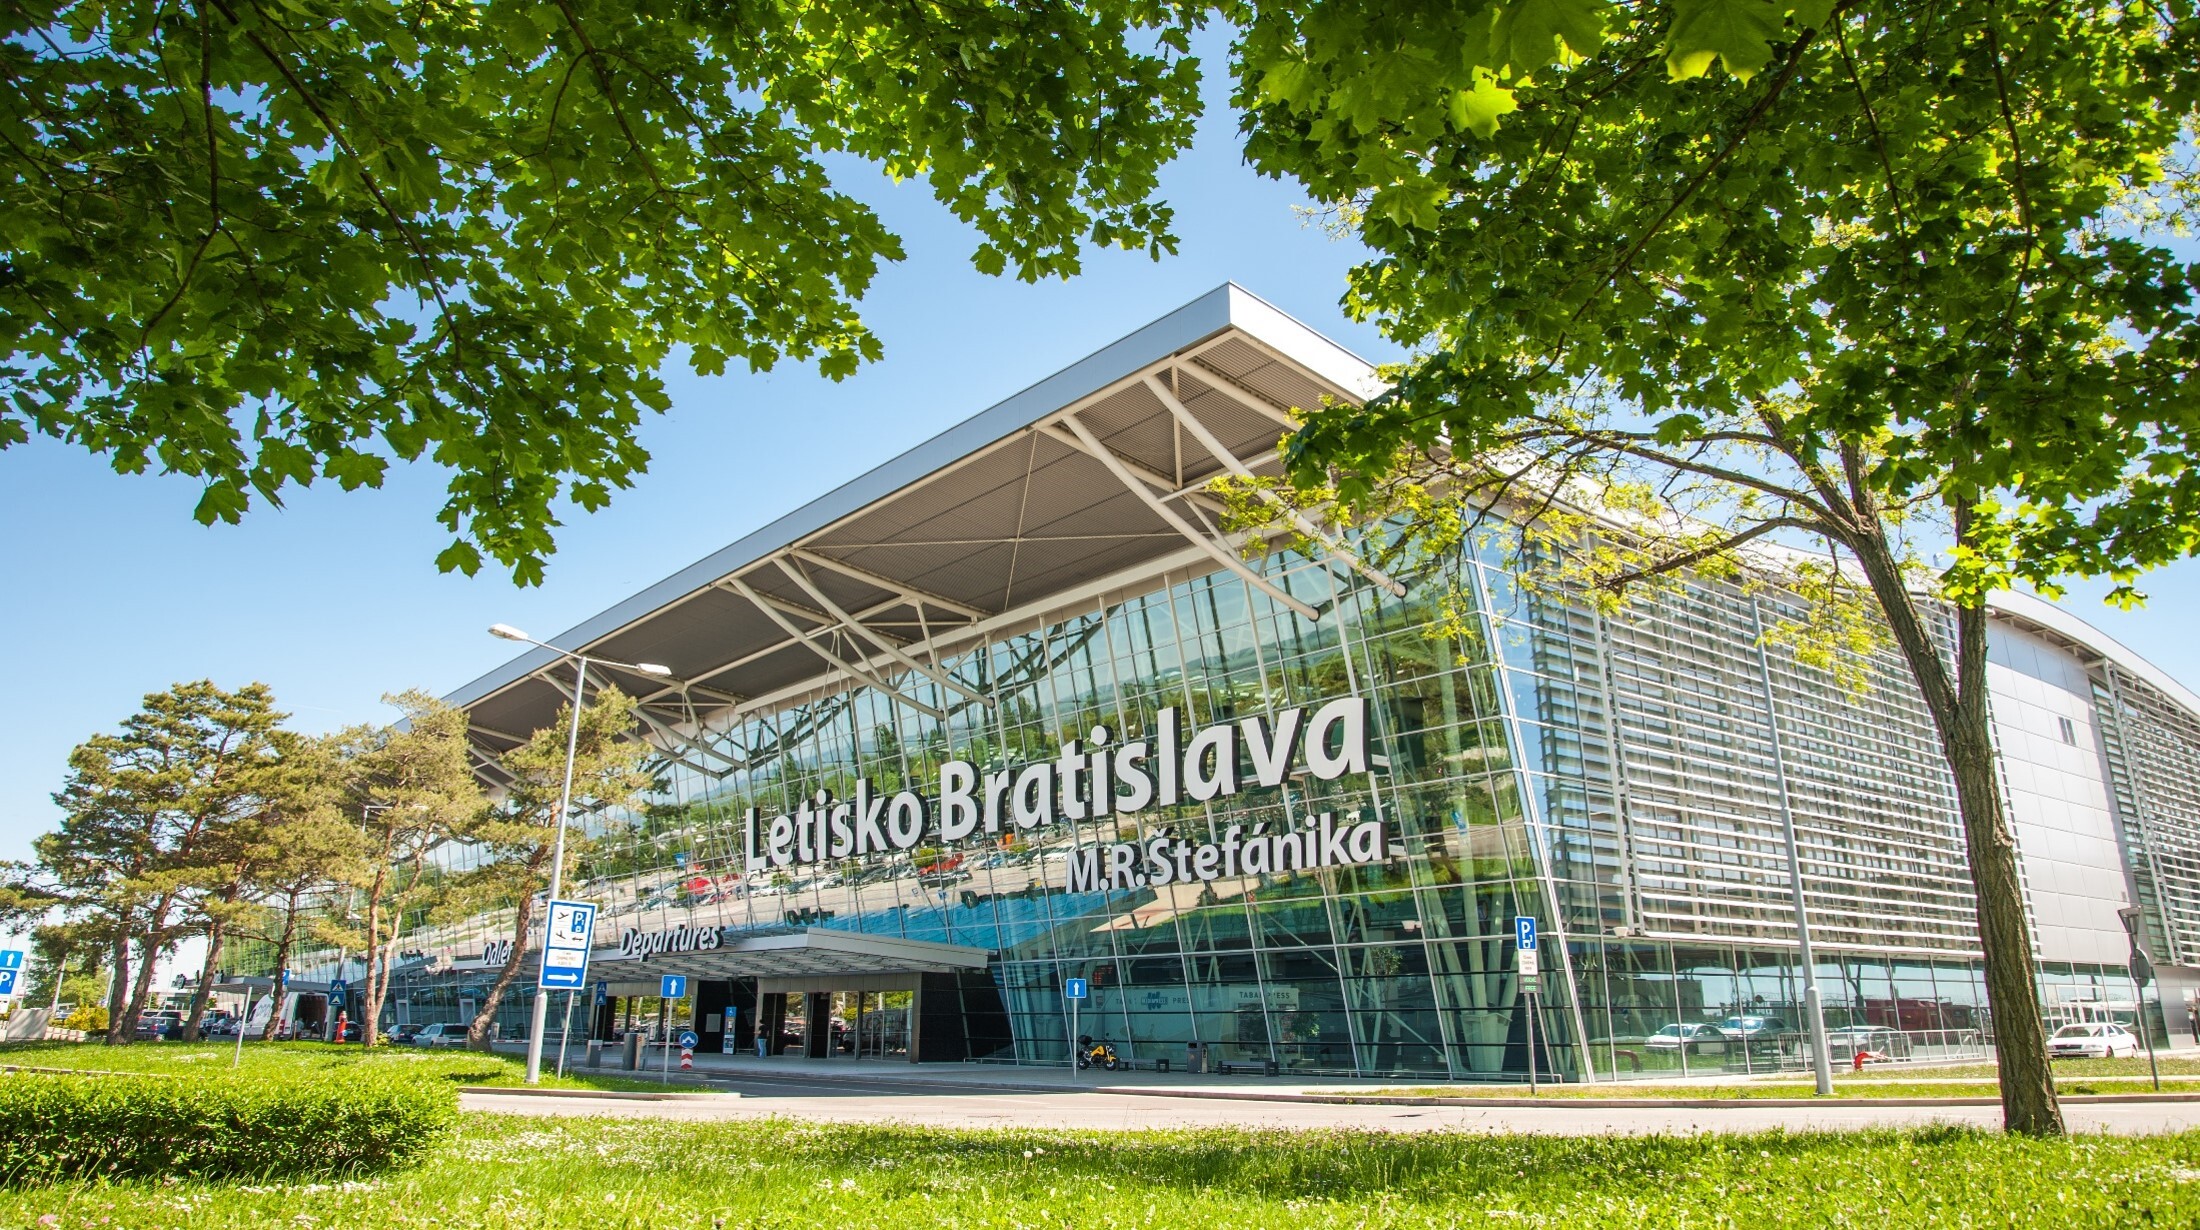 Bratislava airport and Kiwi.com